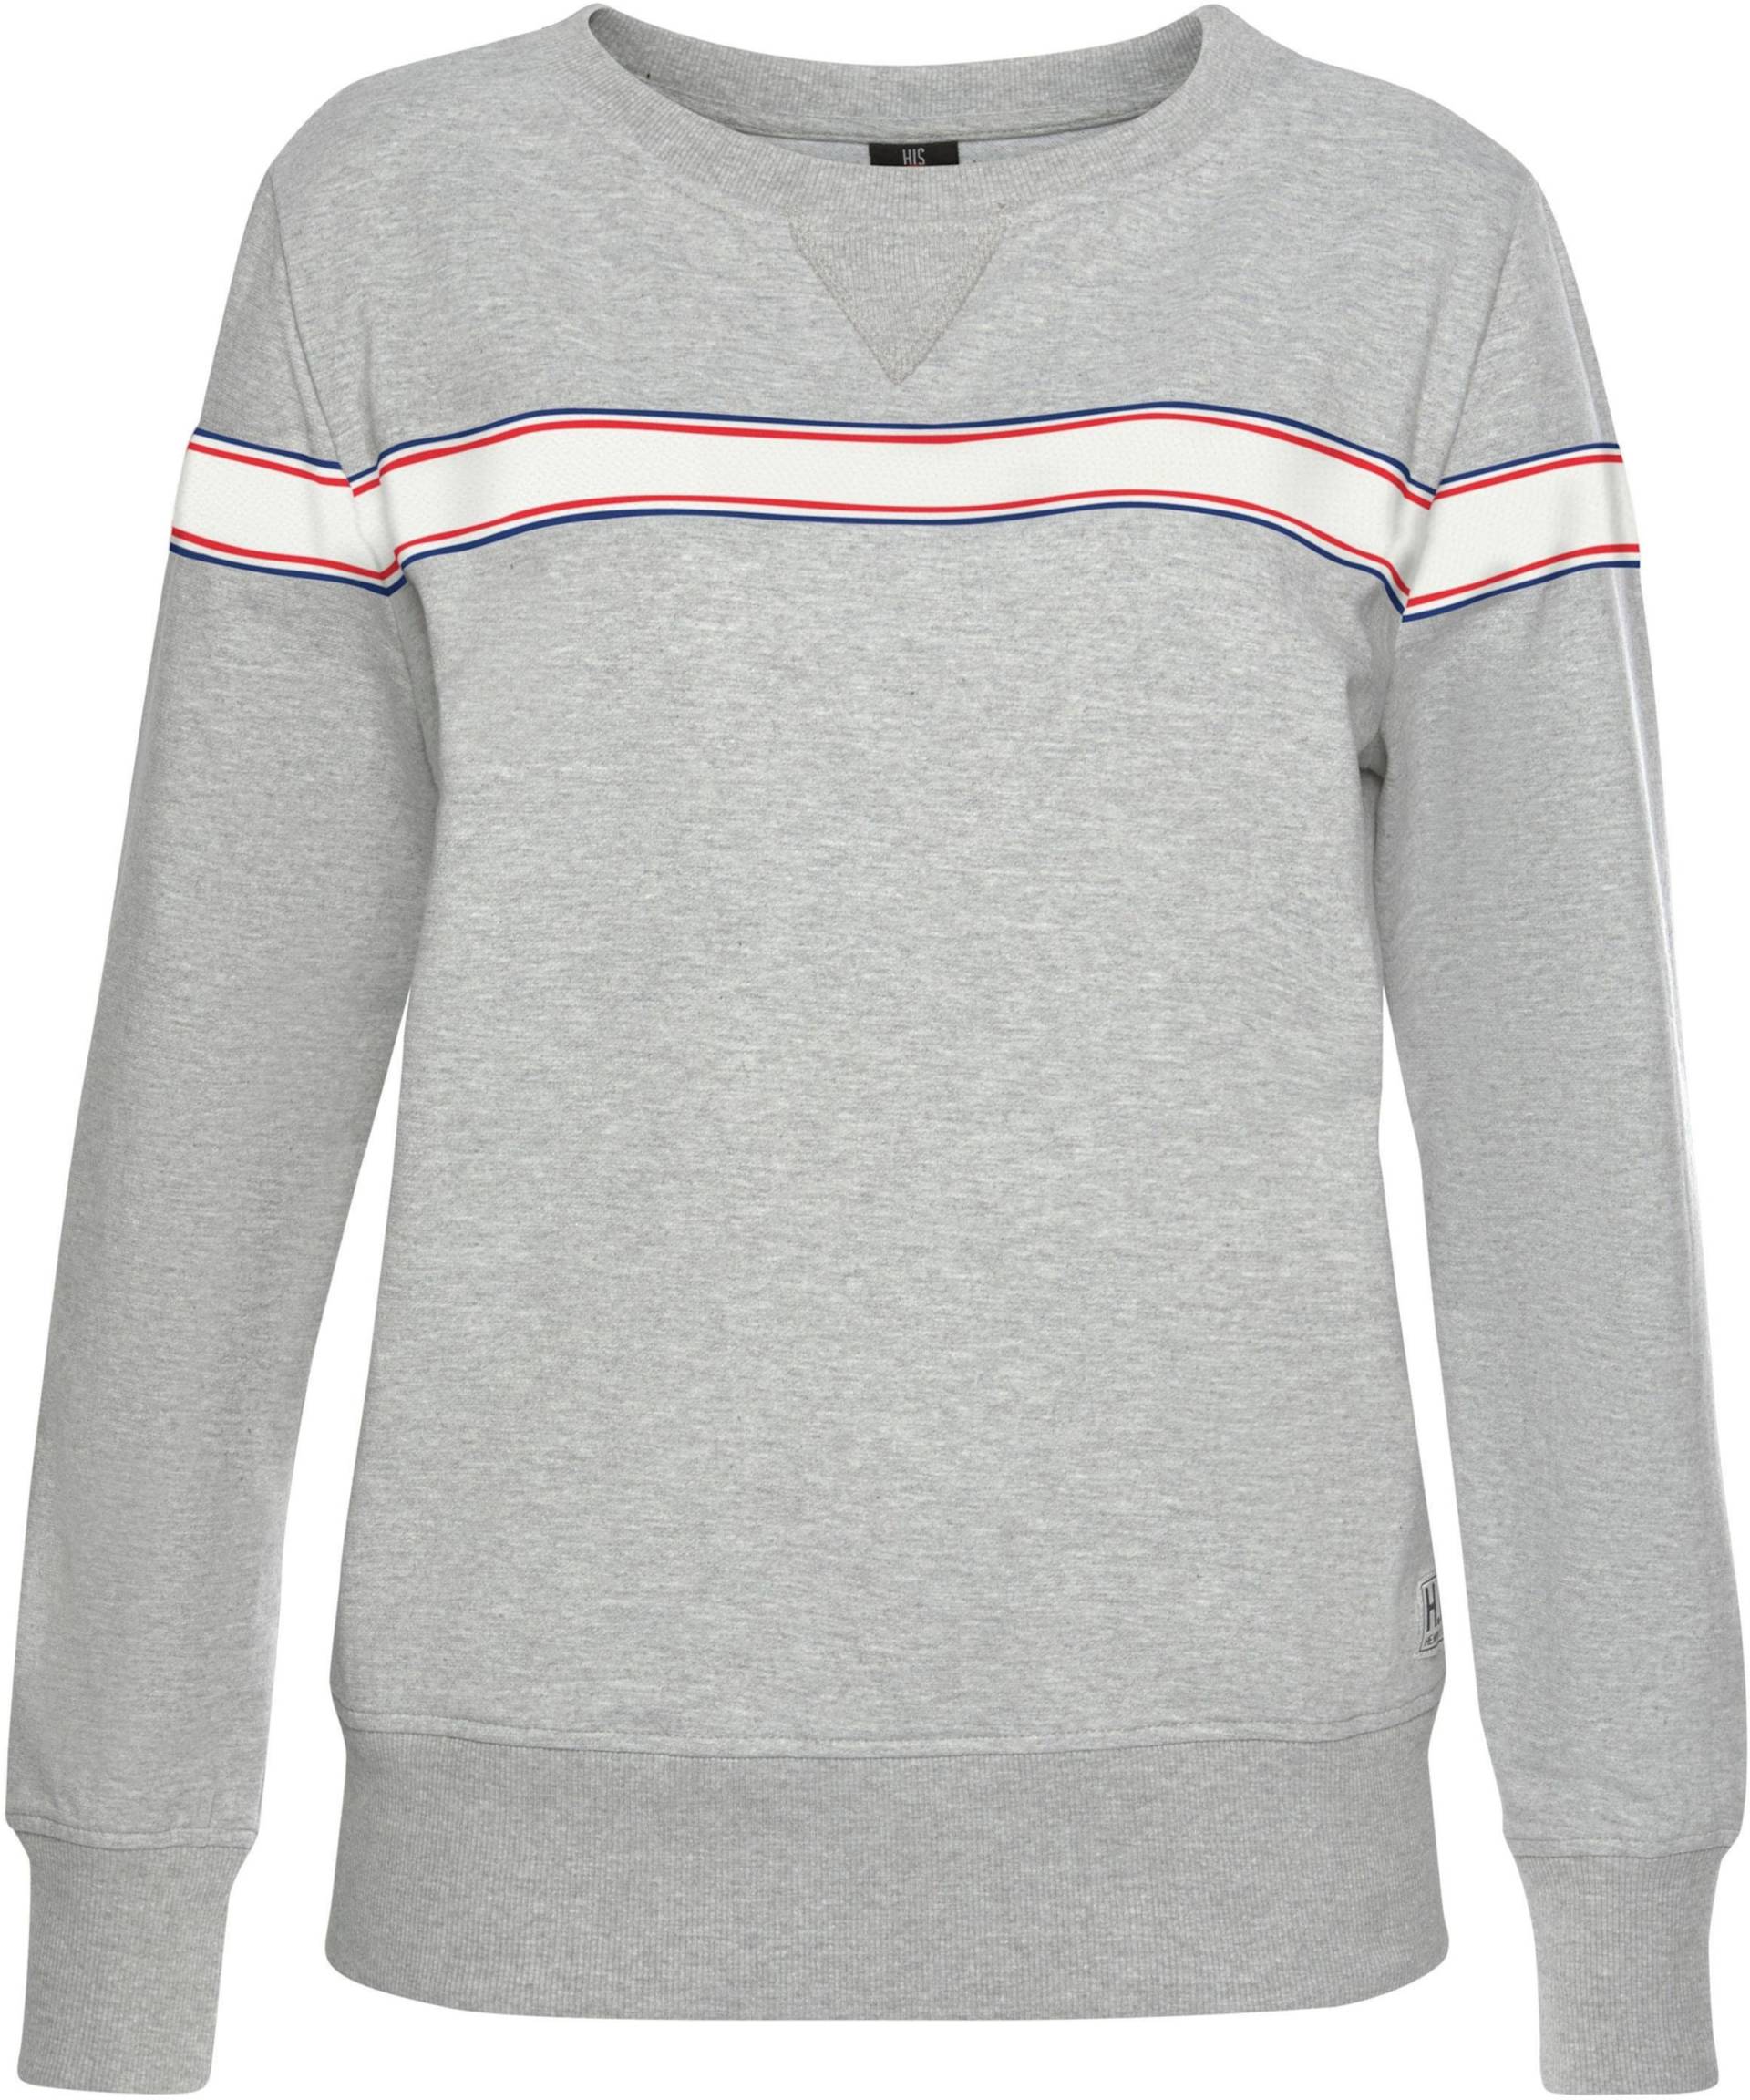 Sweatshirt in grau-meliert von H.I.S